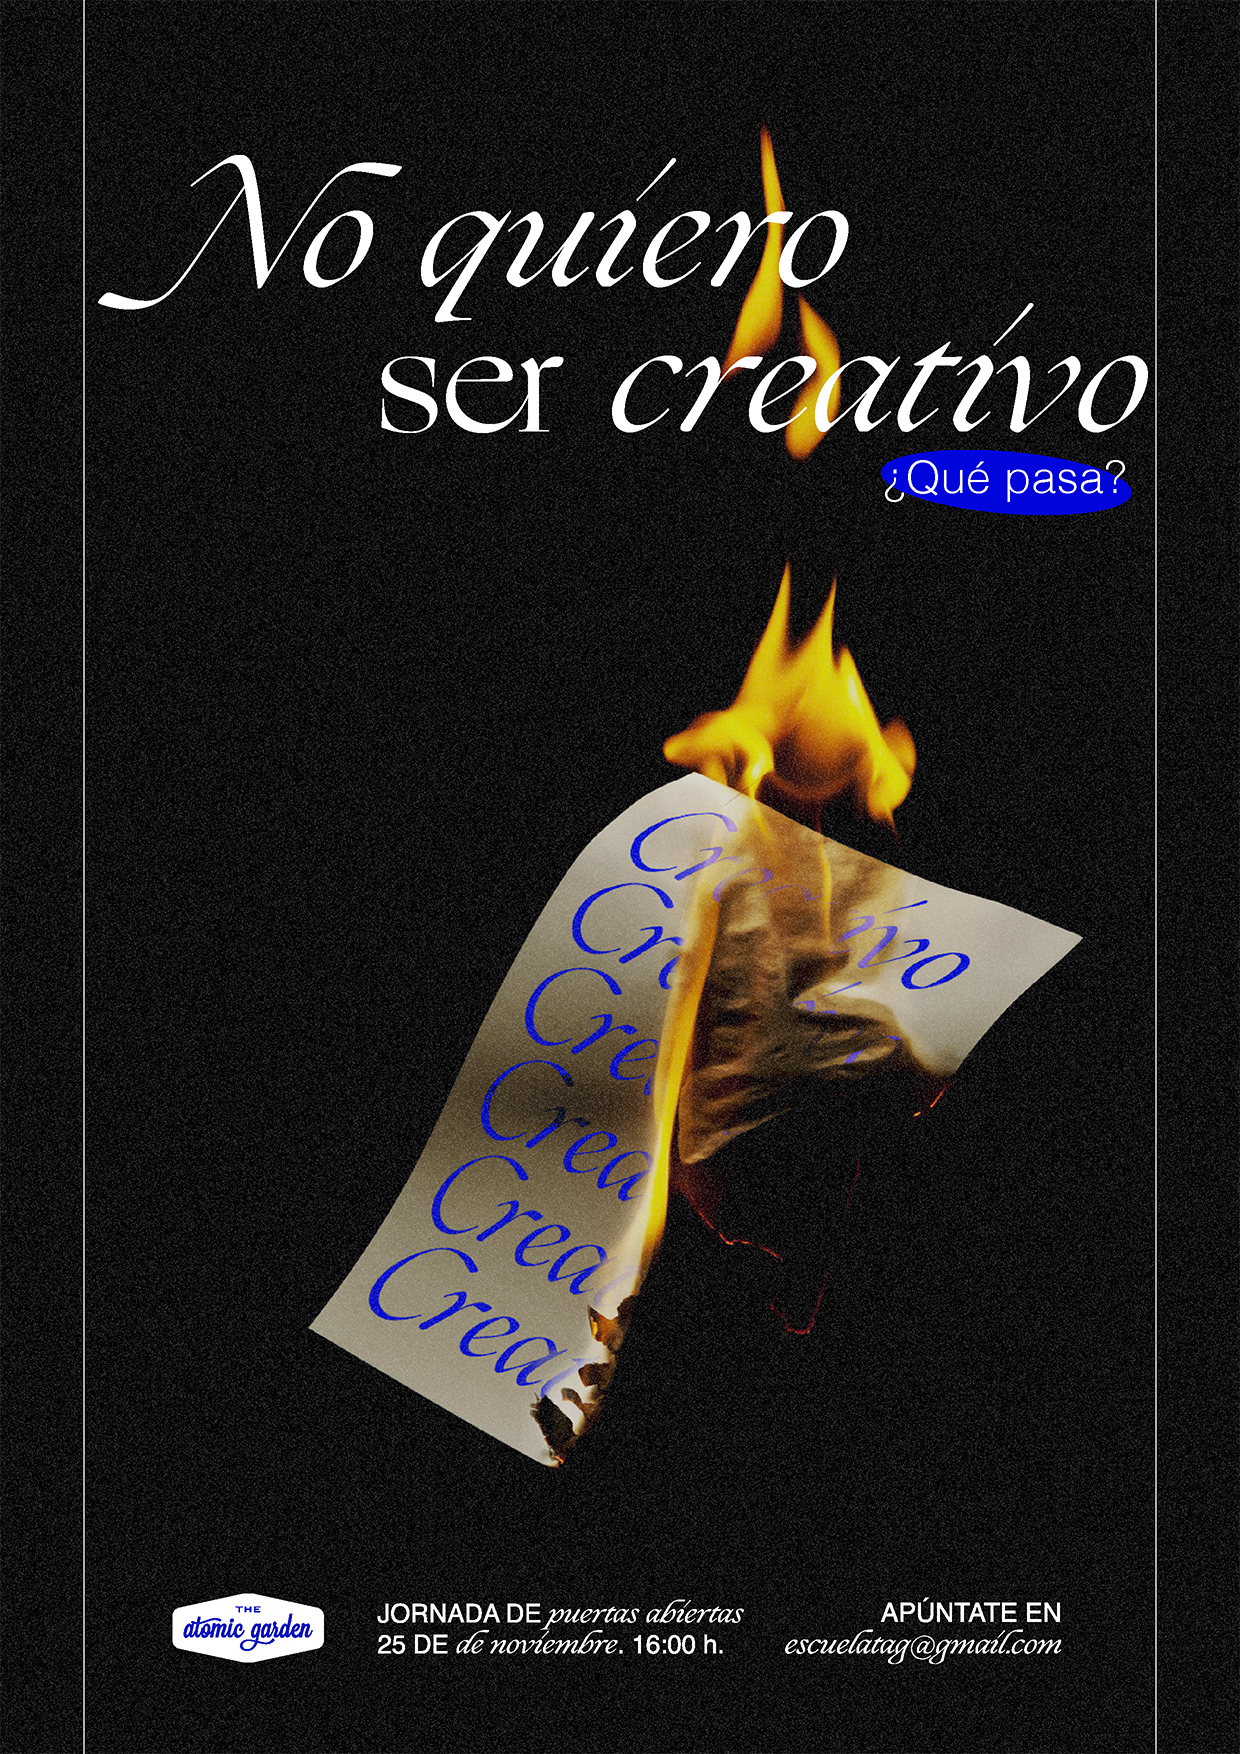 Cartel "No quiero ser creativo"